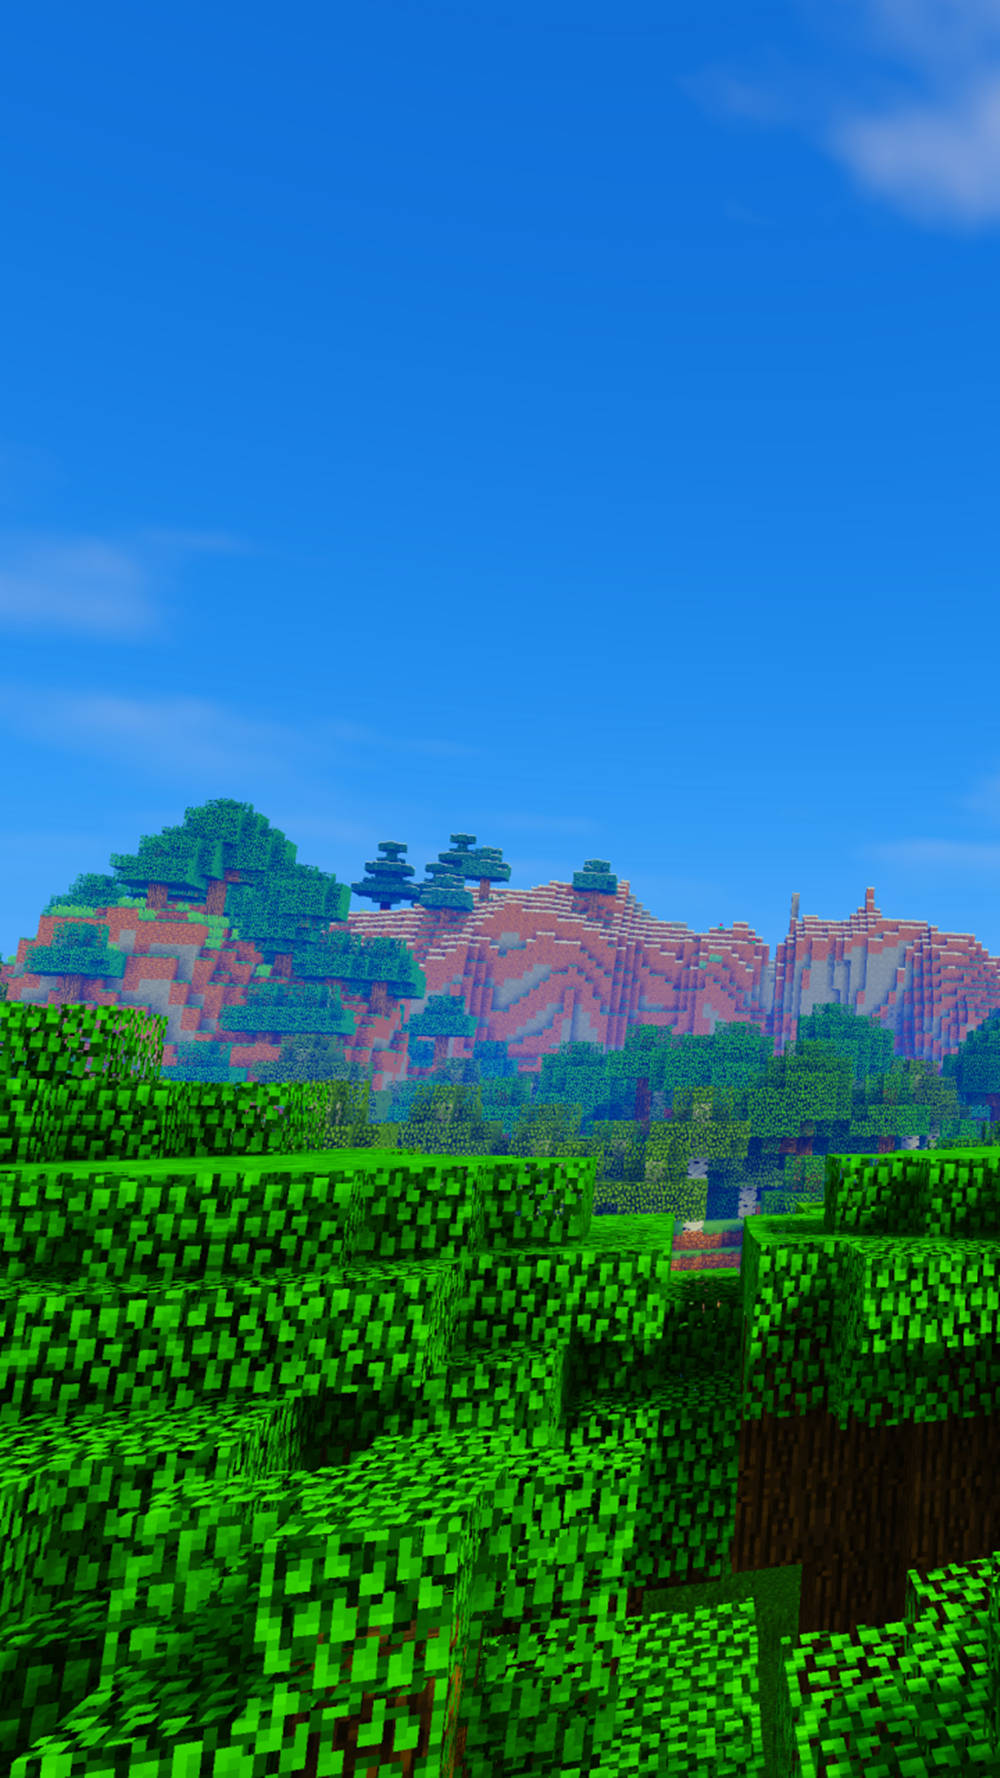 Hình nền Minecraft thiên nhiên xanh lá đẹp cho điện thoại: Hãy tăng thêm niềm vui và sự phấn khích cho điện thoại của bạn bằng việc trang trí ánh mắt của mình bằng những hình nền Minecraft thiên nhiên tươi tắn và đầy màu sắc. Tải ngay miễn phí để thay đổi không gian trên điện thoại của bạn.